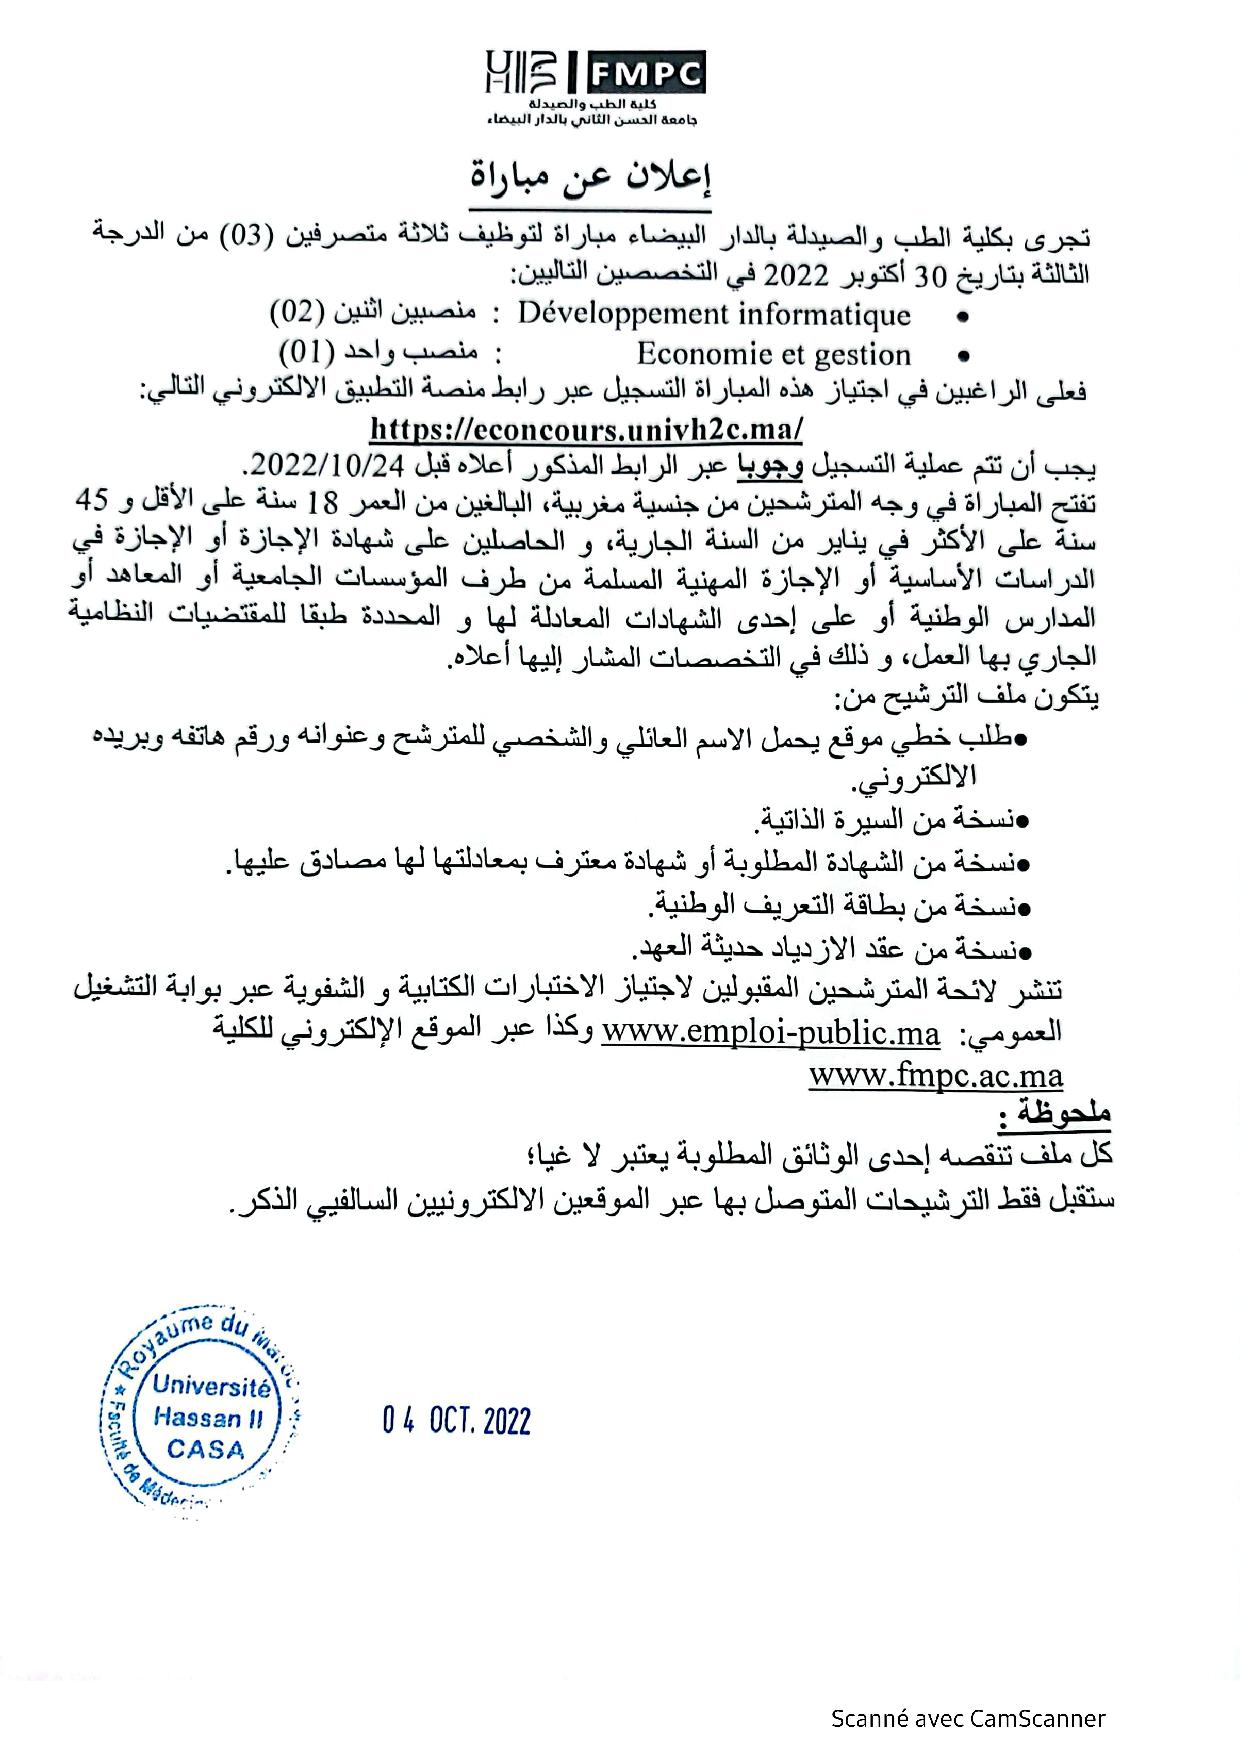 جامعة الحسن الثاني- الدار البيضاء مباراة توظيف 3 متصرفين من الدرجة الثانية.